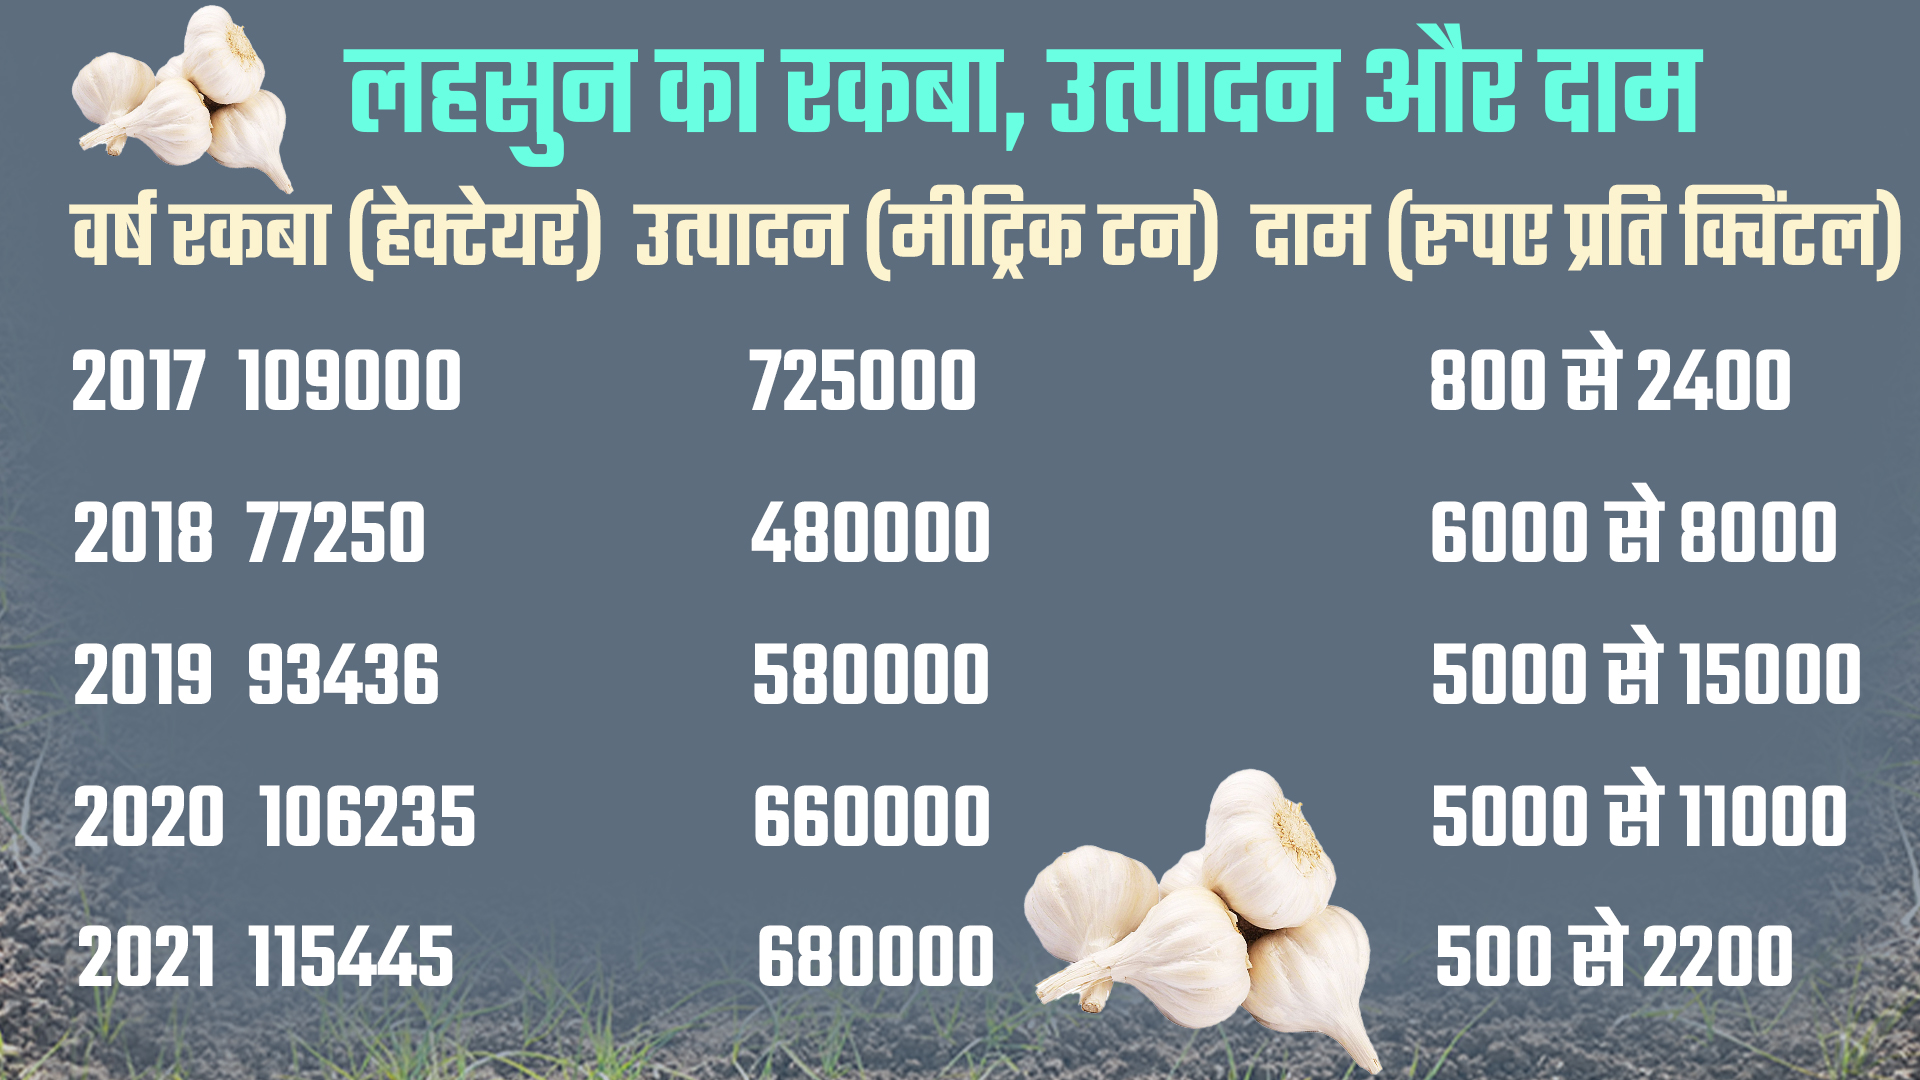 Garlic acreage reduced in Kota division